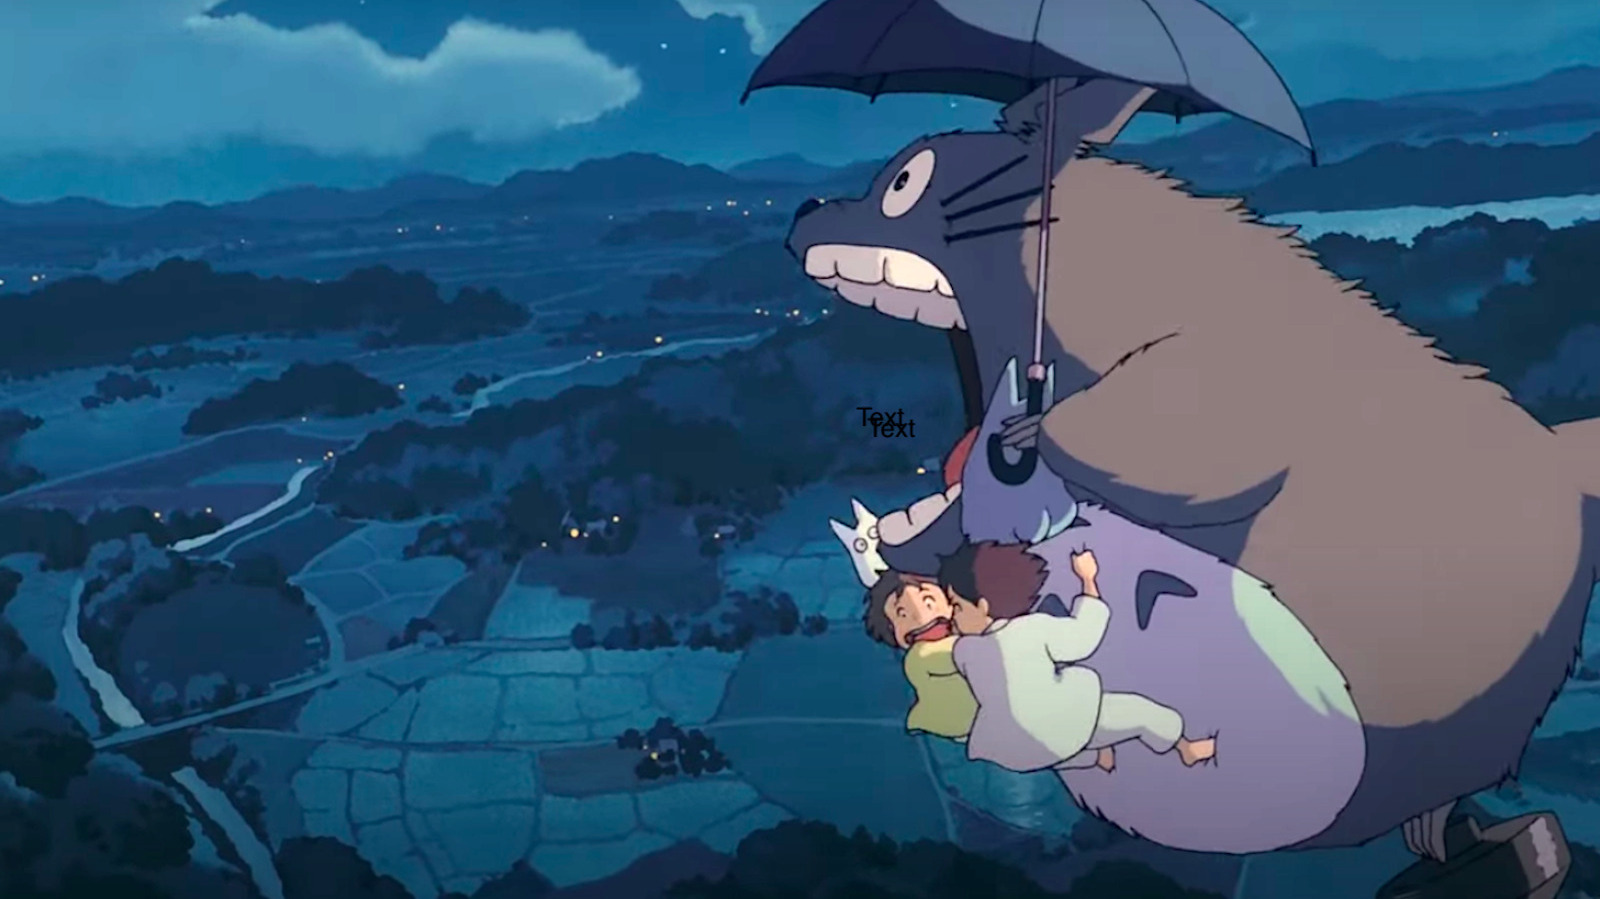 The Common Theme That Runs Through Most Hayao Miyazaki Works